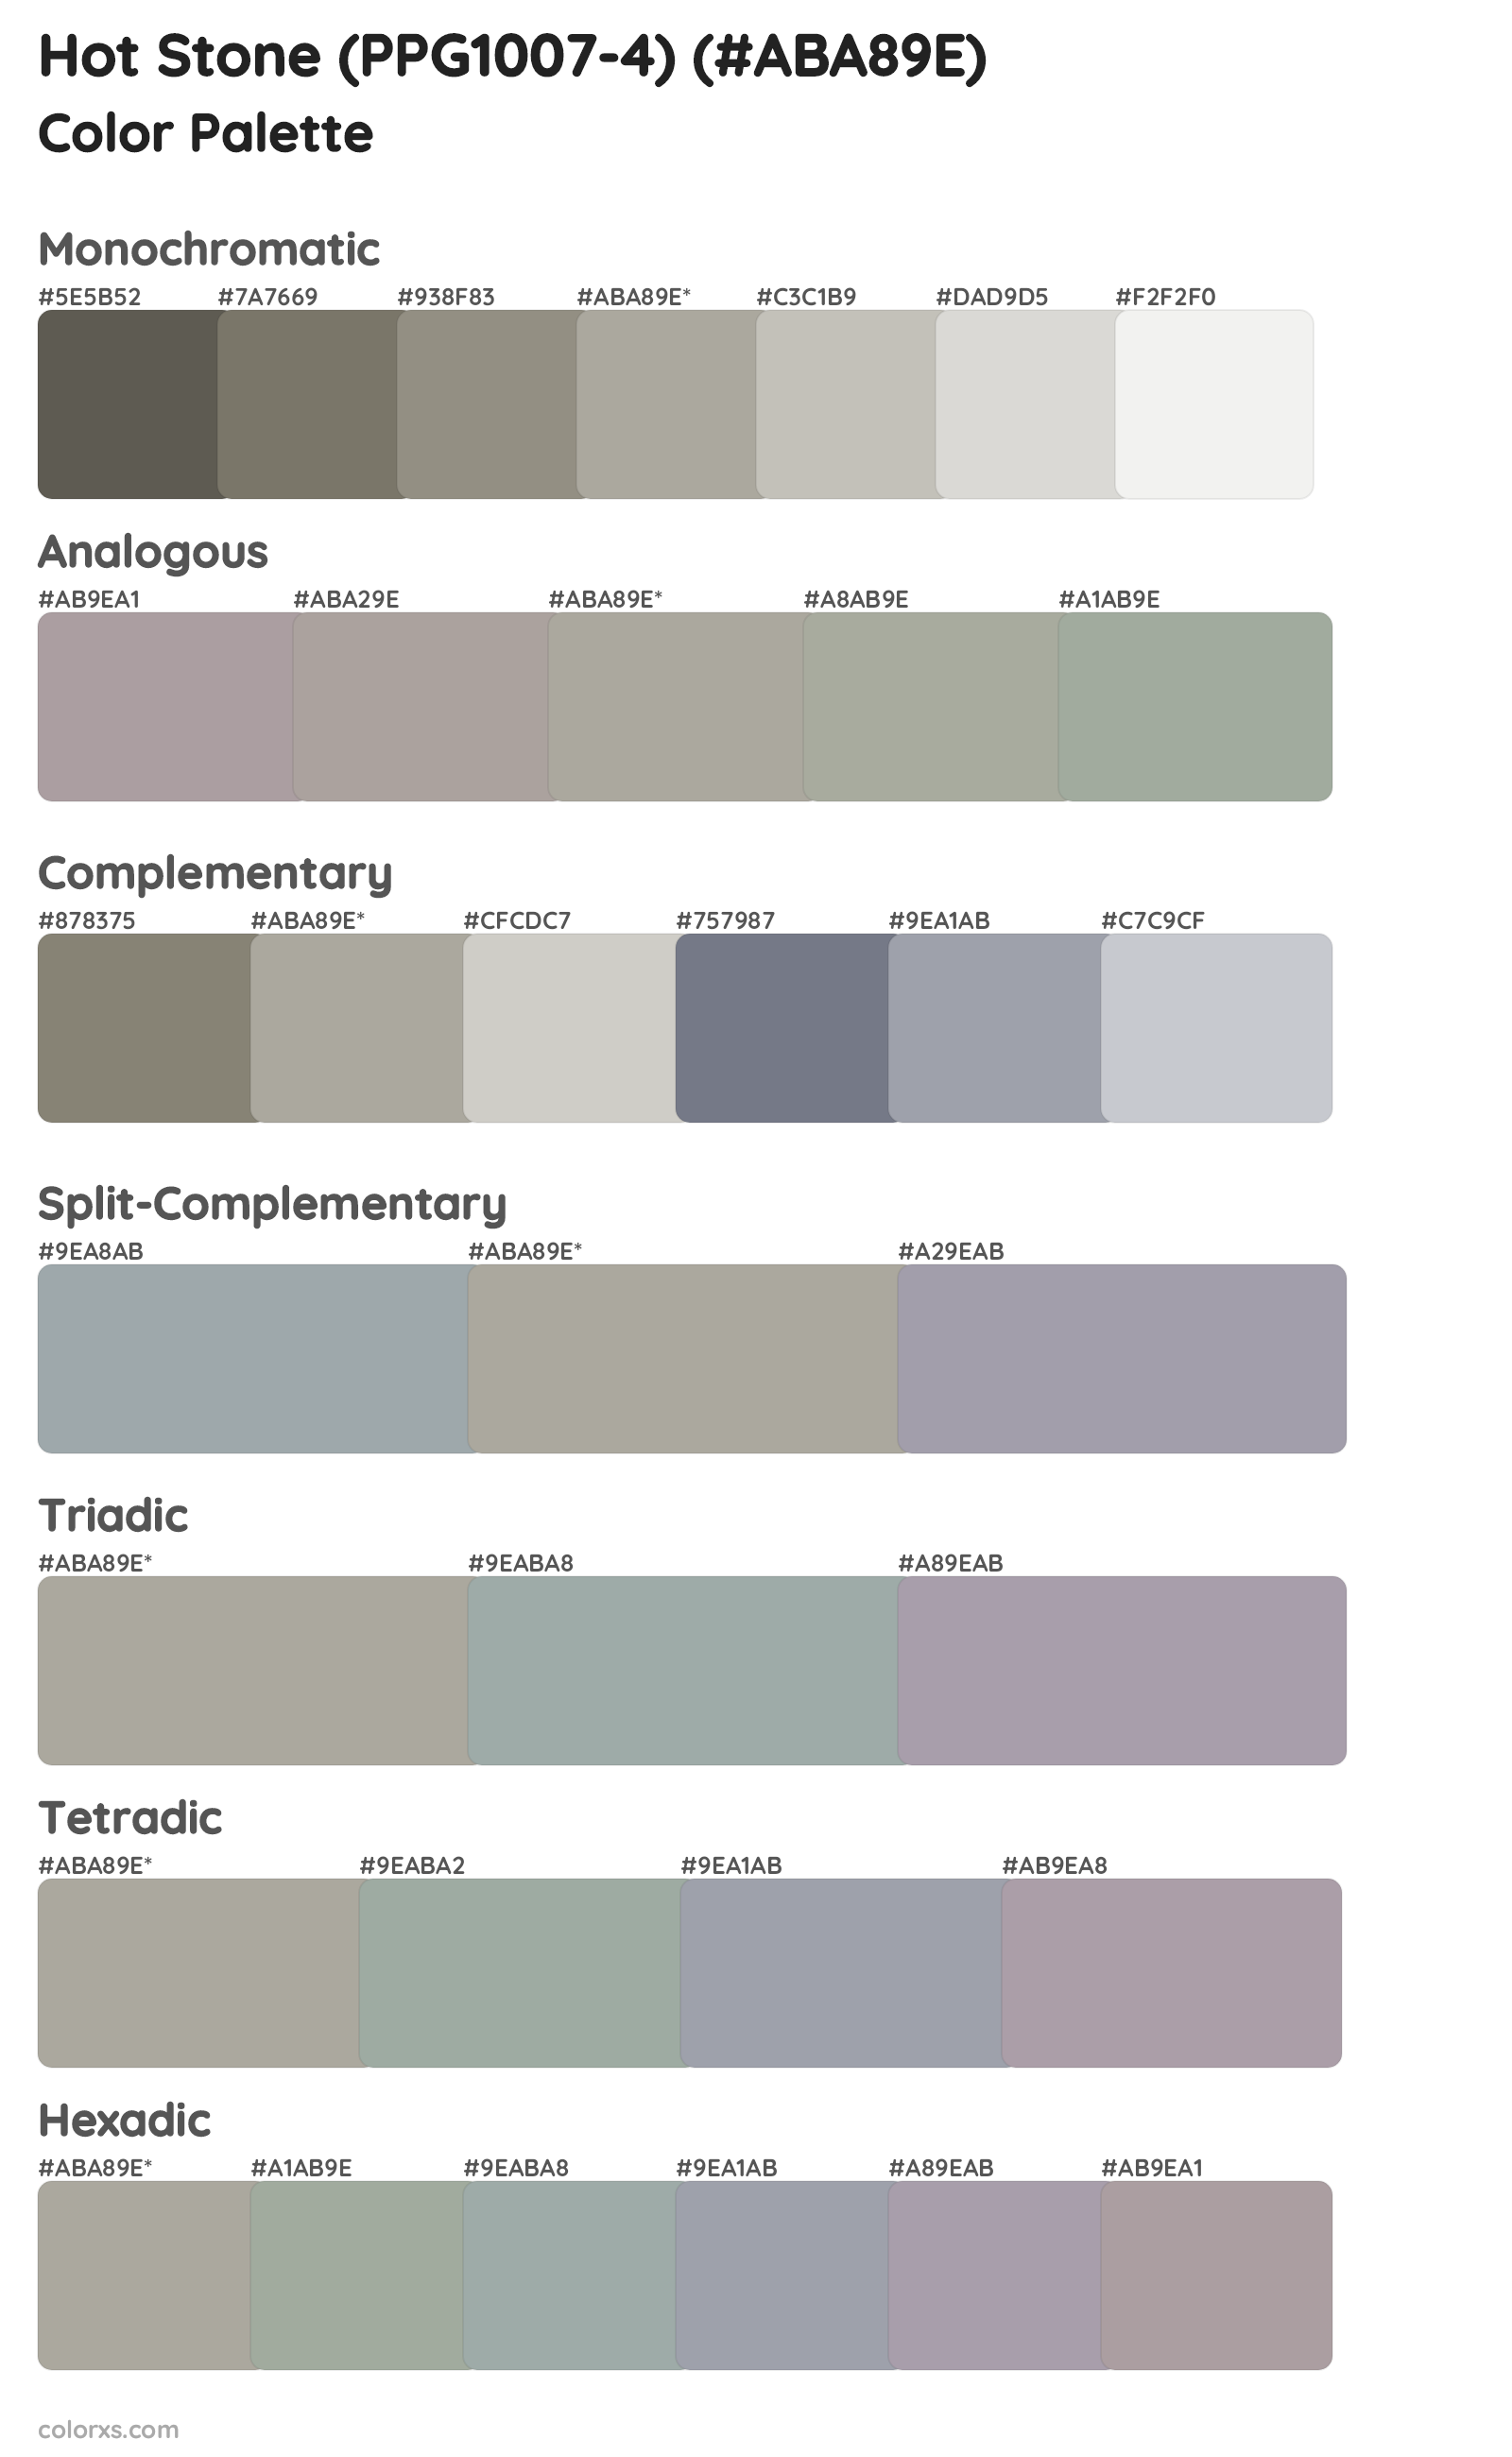 Hot Stone (PPG1007-4) Color Scheme Palettes